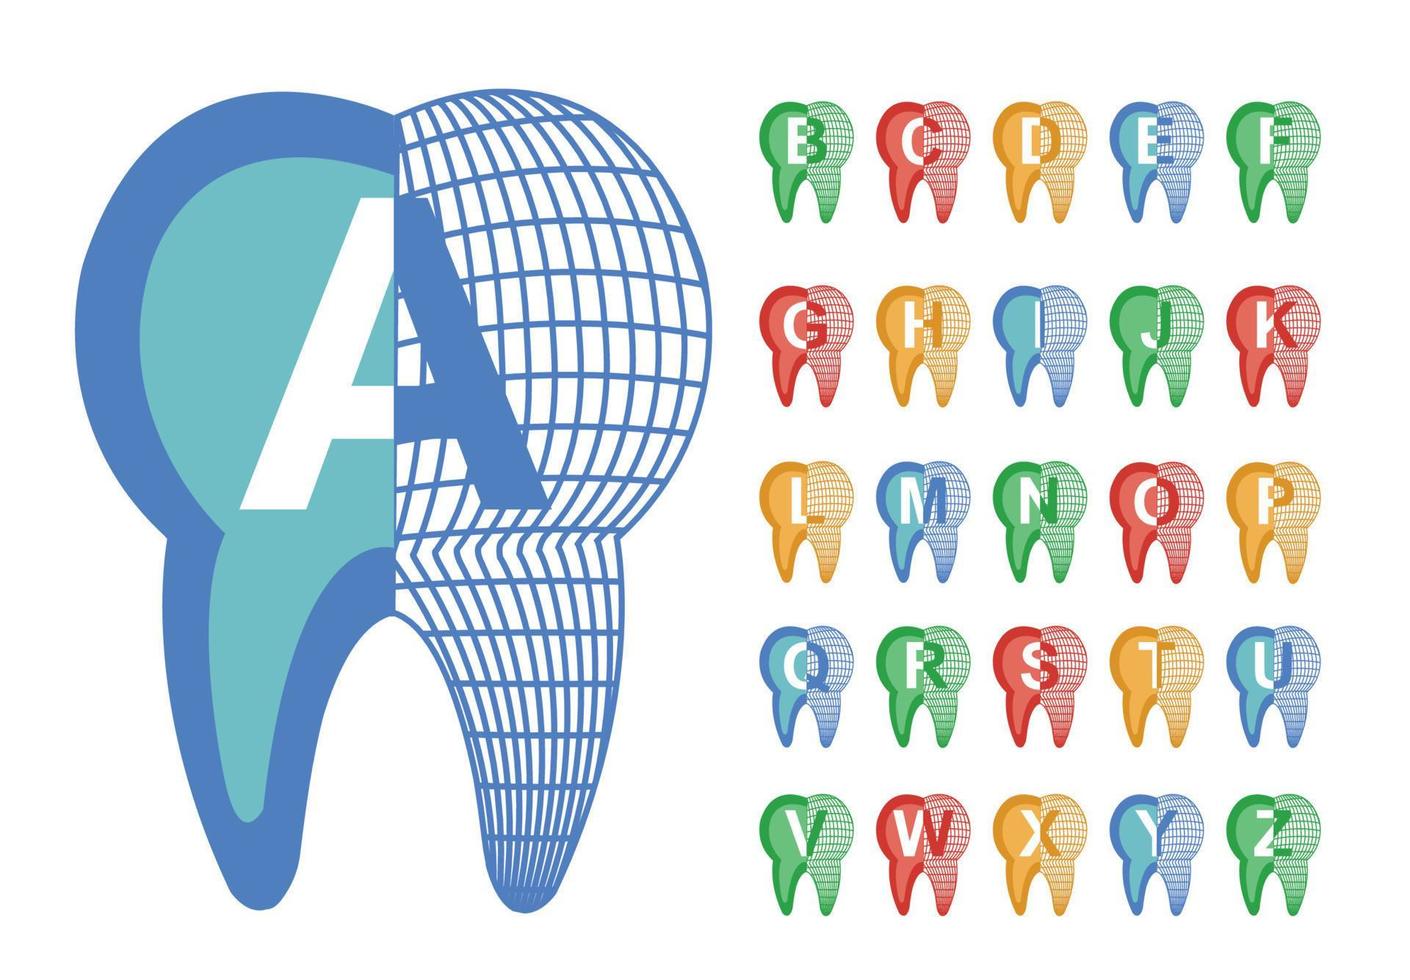 tandlettertype, vector kleurrijk alfabet voor tandontwerp en tekst